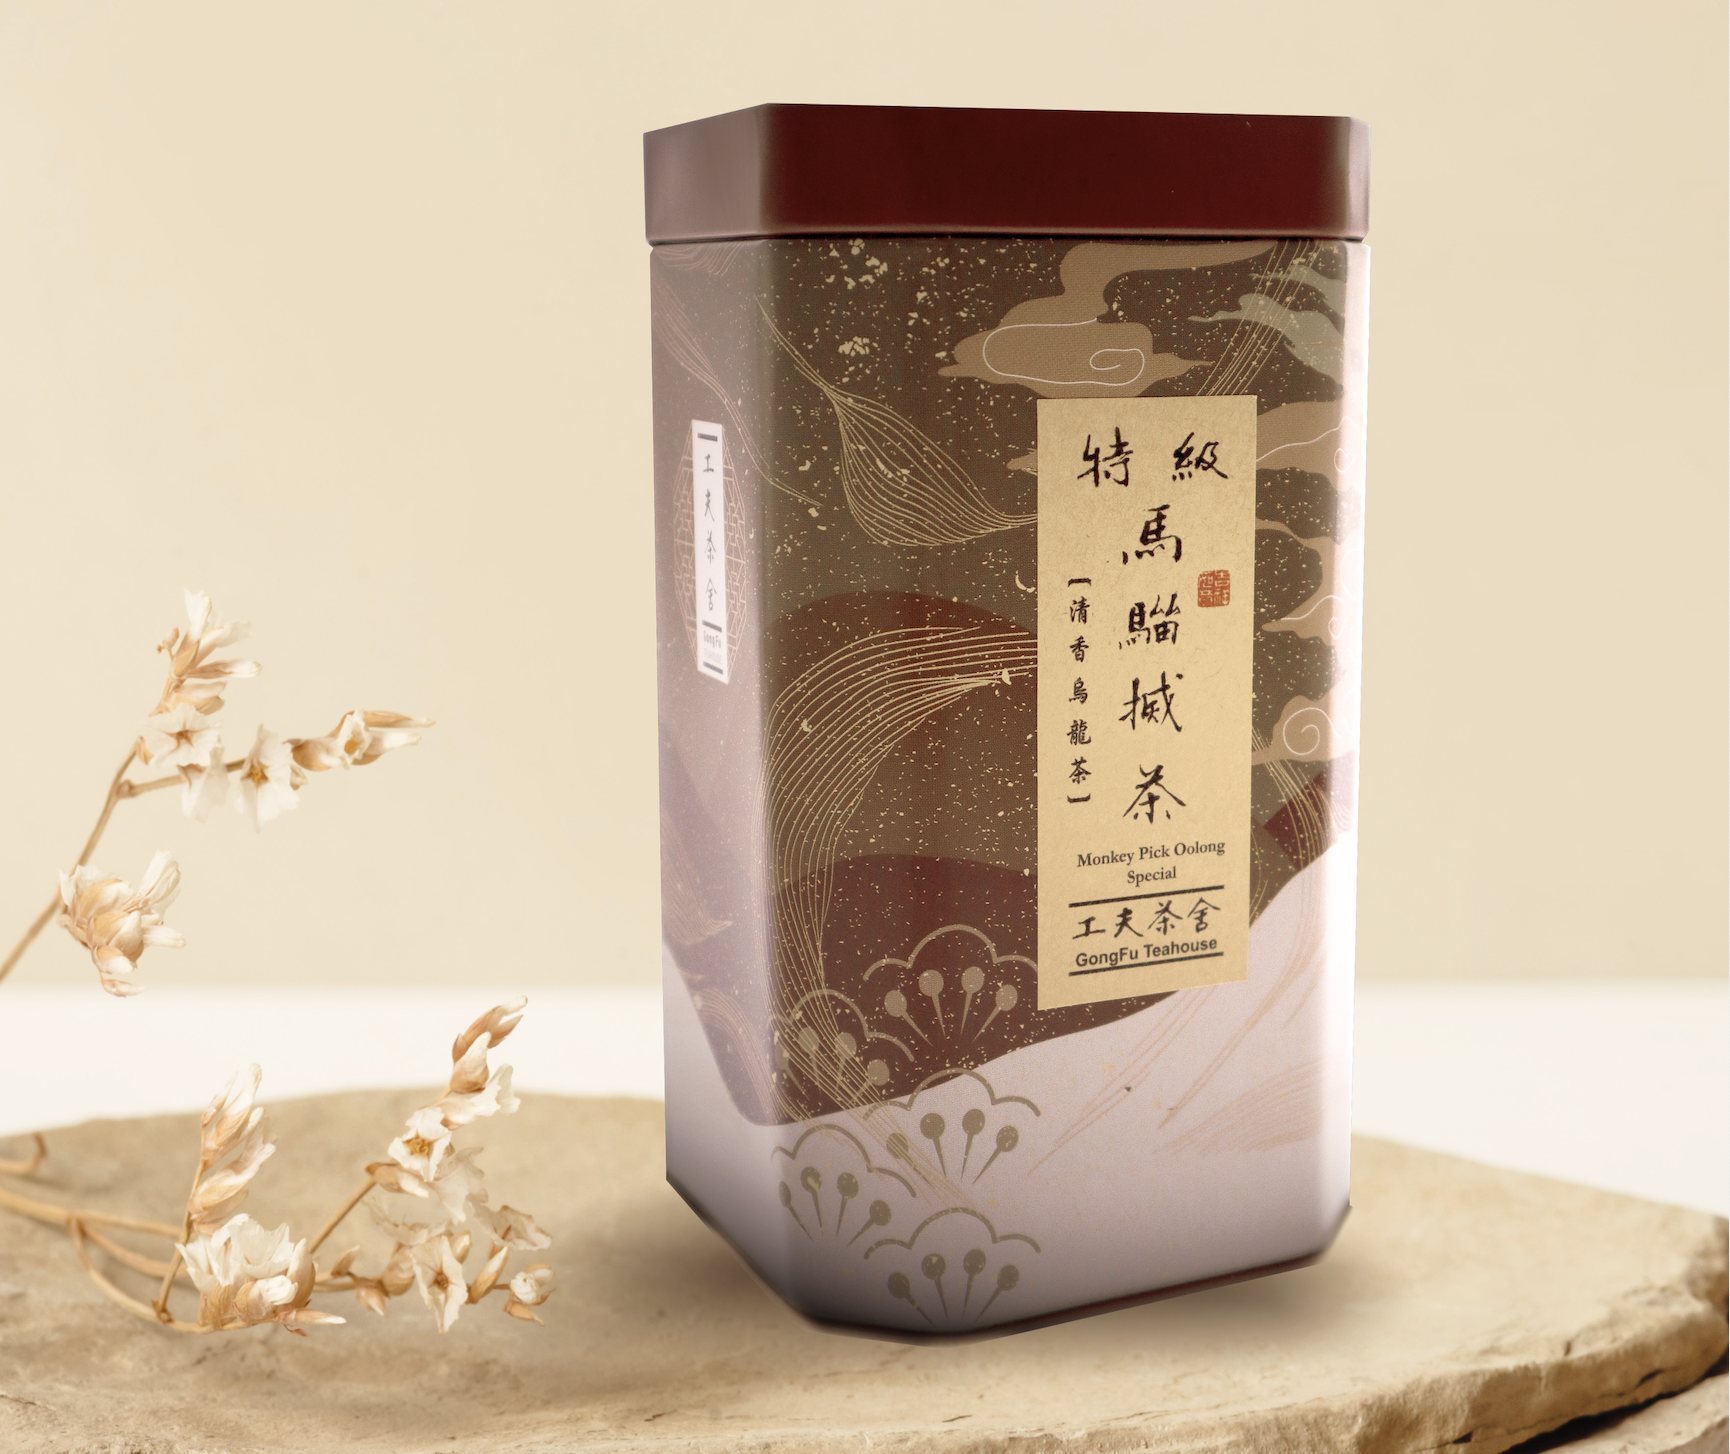 特級馬騮搣茶-清香烏龍茶N.W.:150g